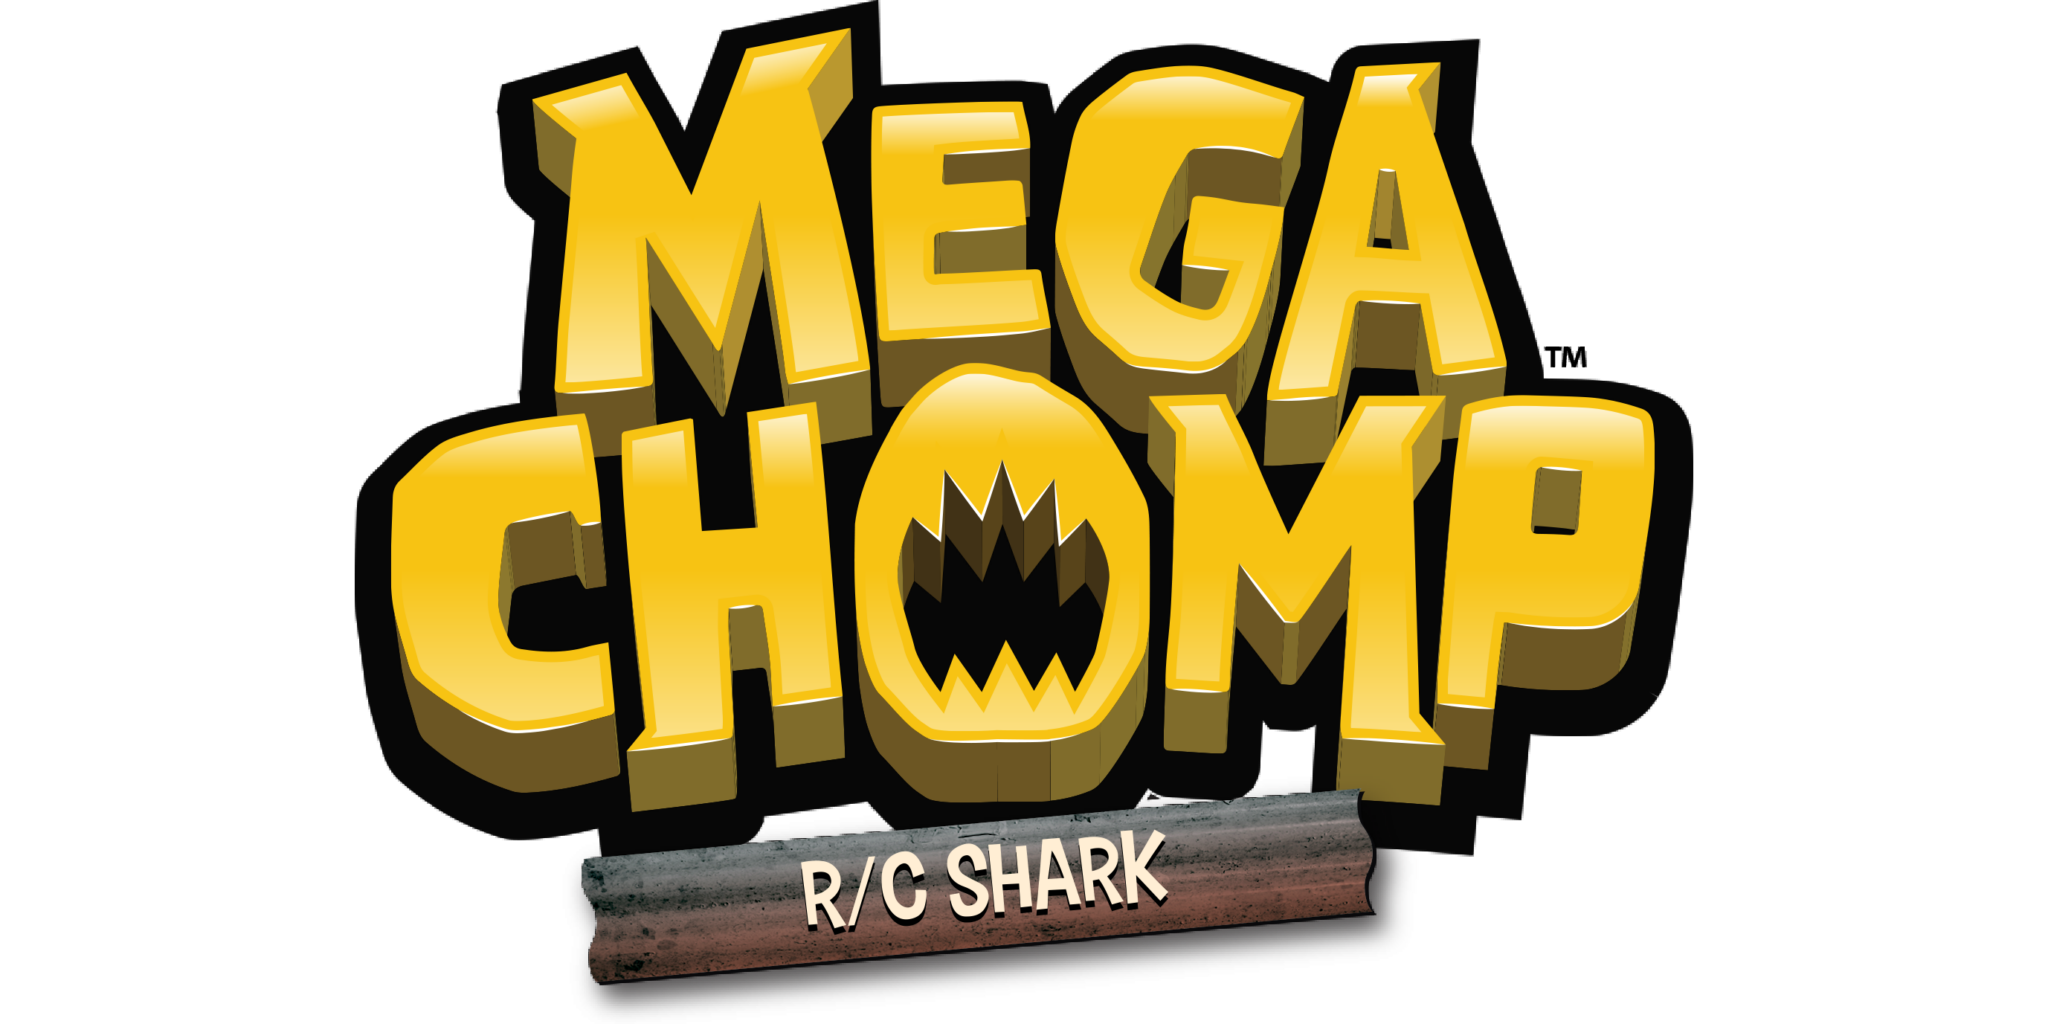 Mega Chomp